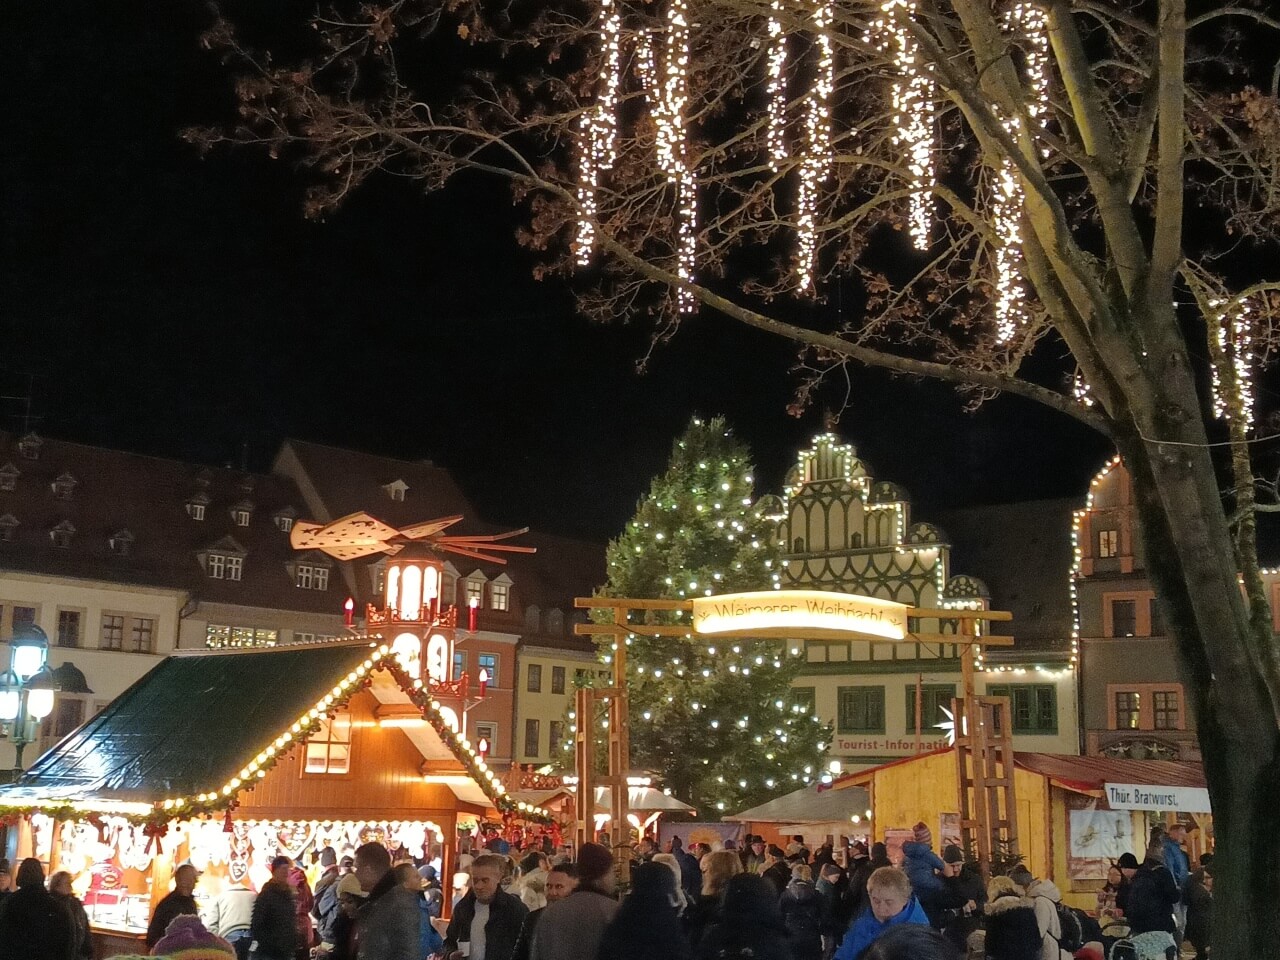 Weihnachtsmarkt Weimar - festlich geschmückter Marktplatz